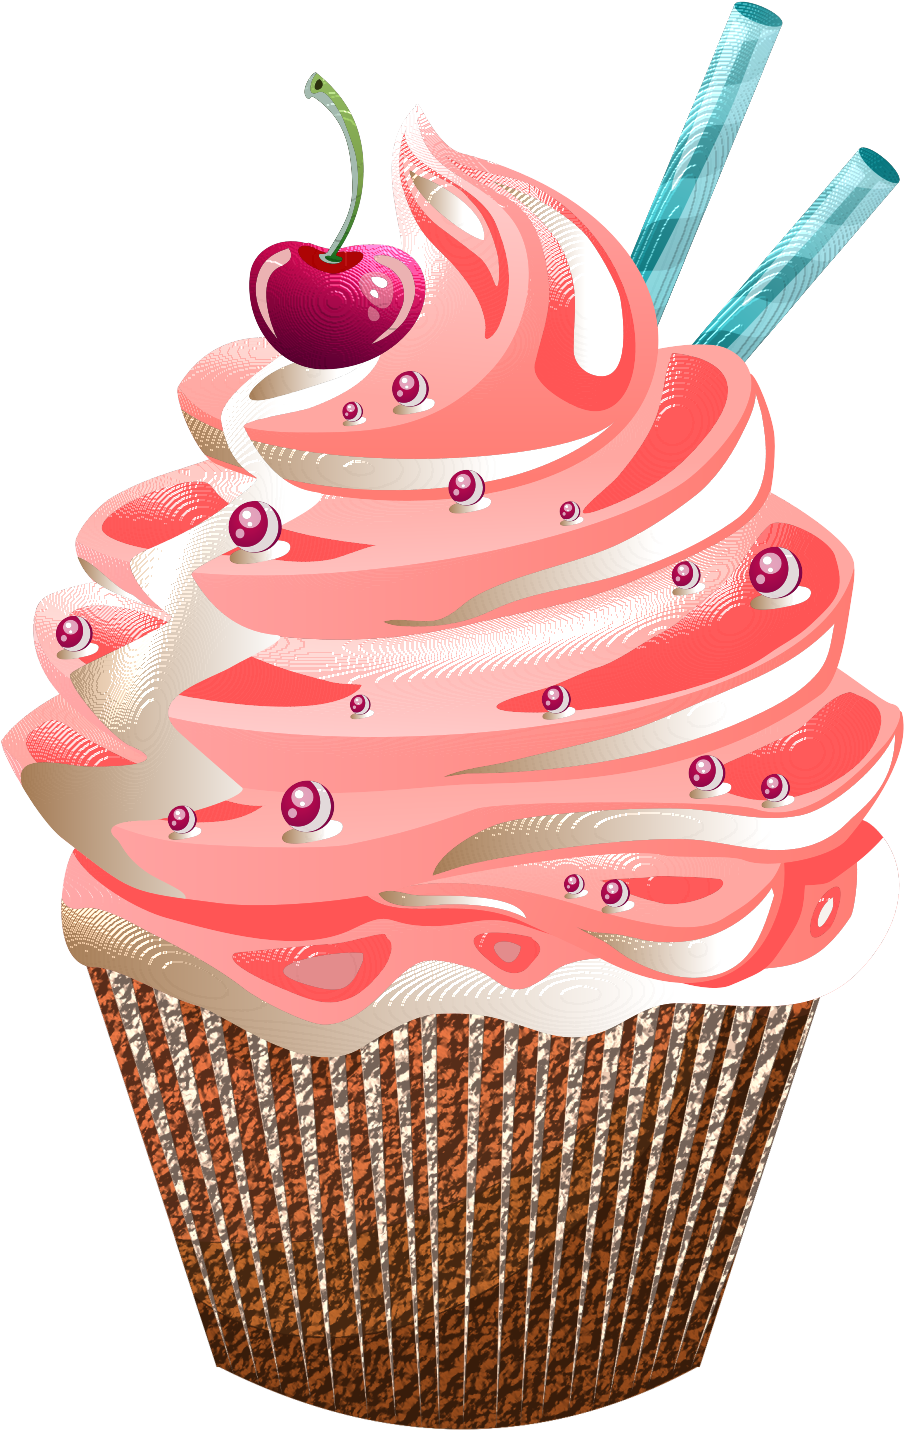 *✿**✿*cupcake*✿**✿* - Cupcakes 210 X 297 (1083x1500)